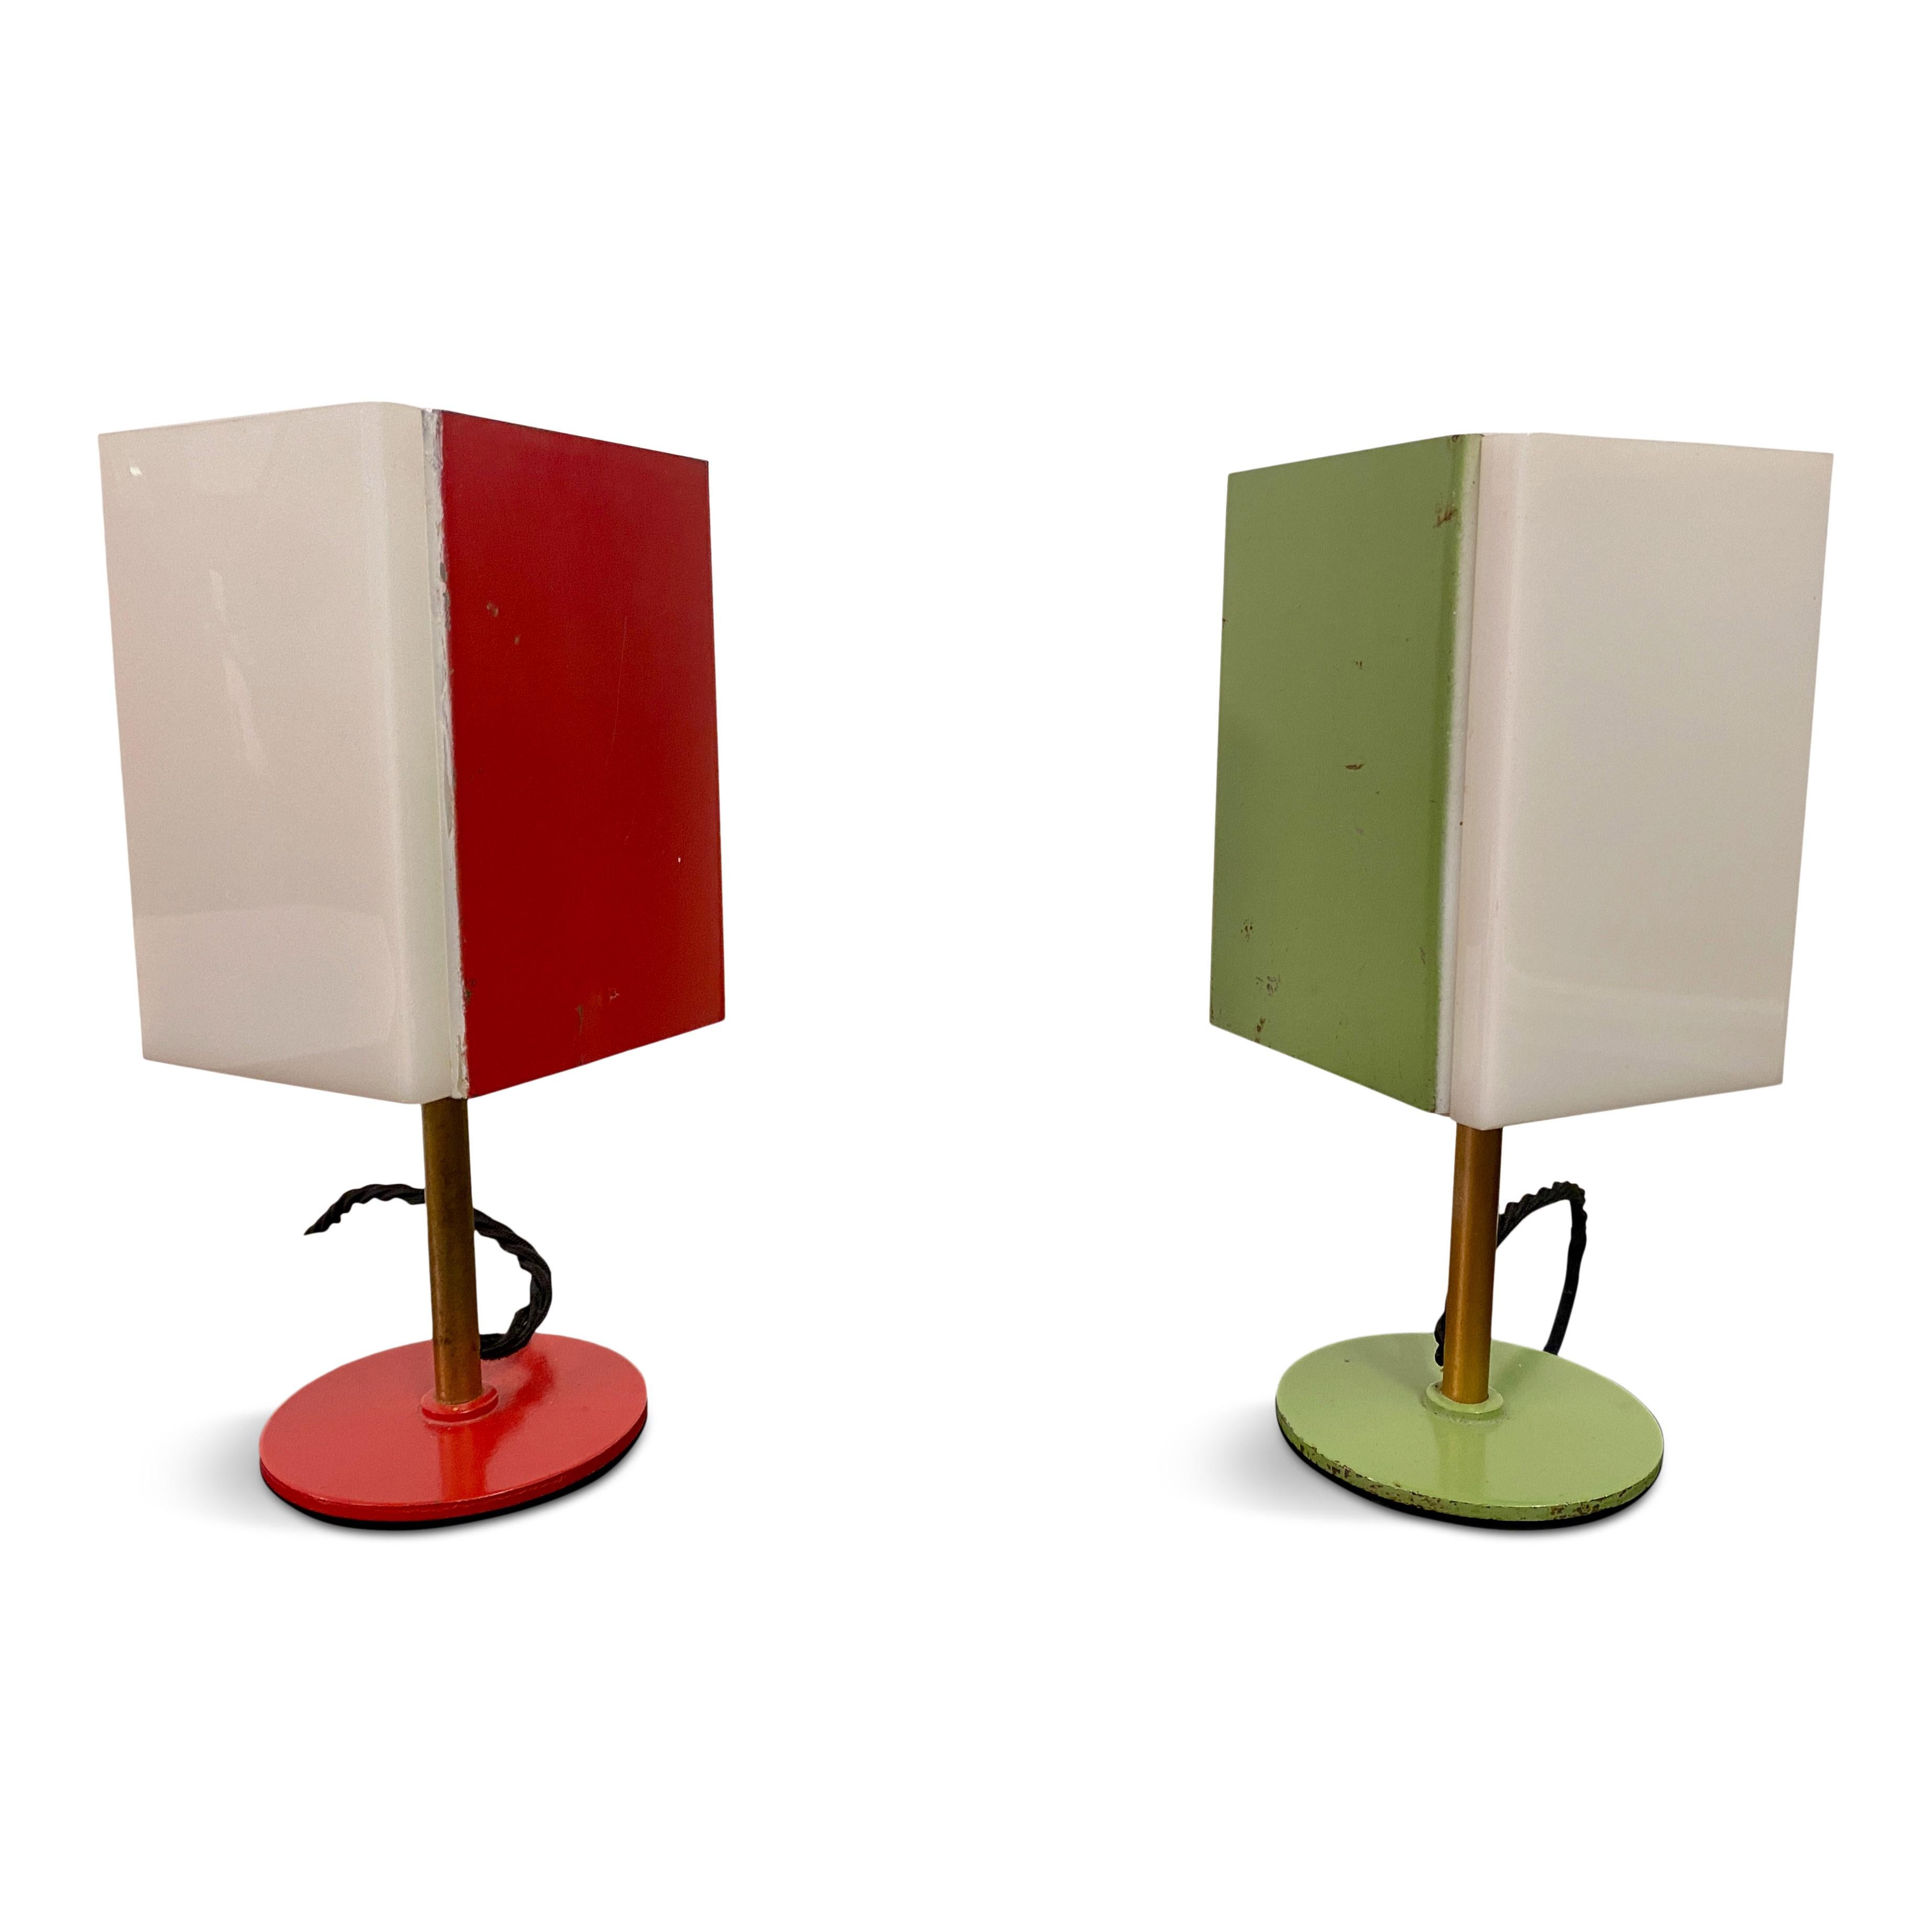 Paire de lampes de table

Perspex et métal coloré

Base en acier peint

Cordon flexible noir

Italie années 1950/1960